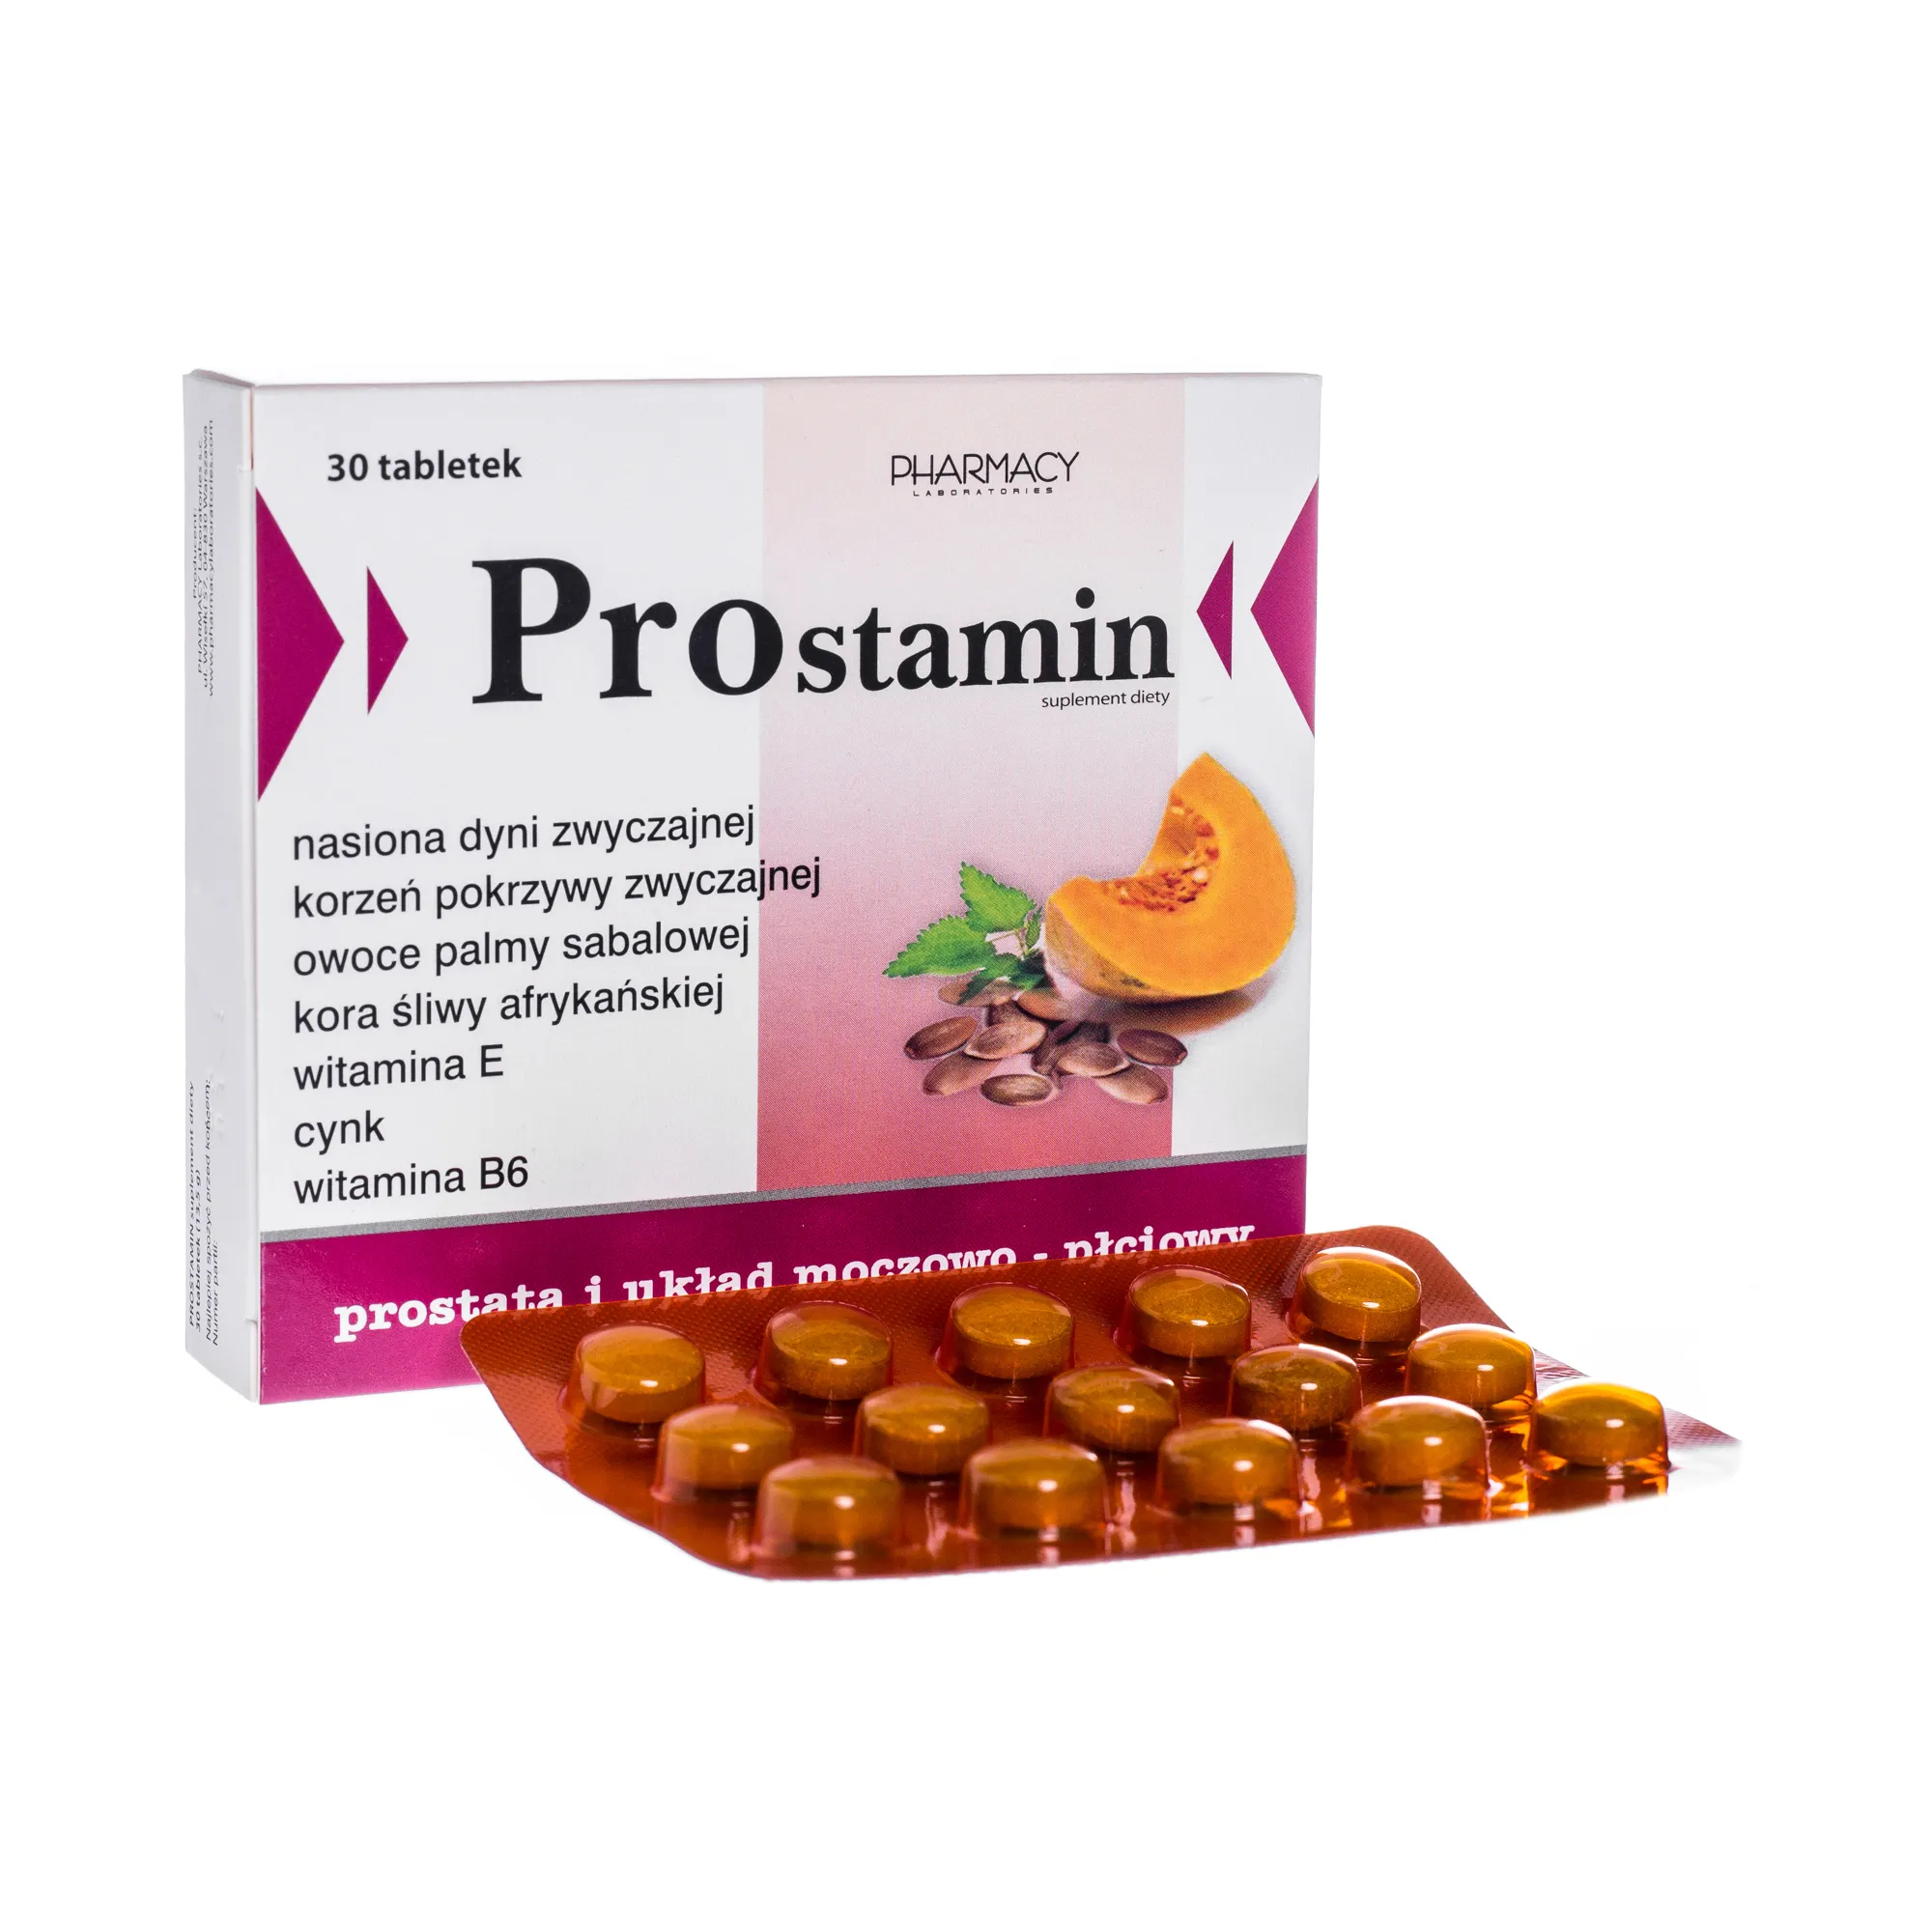 Prostamin, suplement diety, 30 tabletek